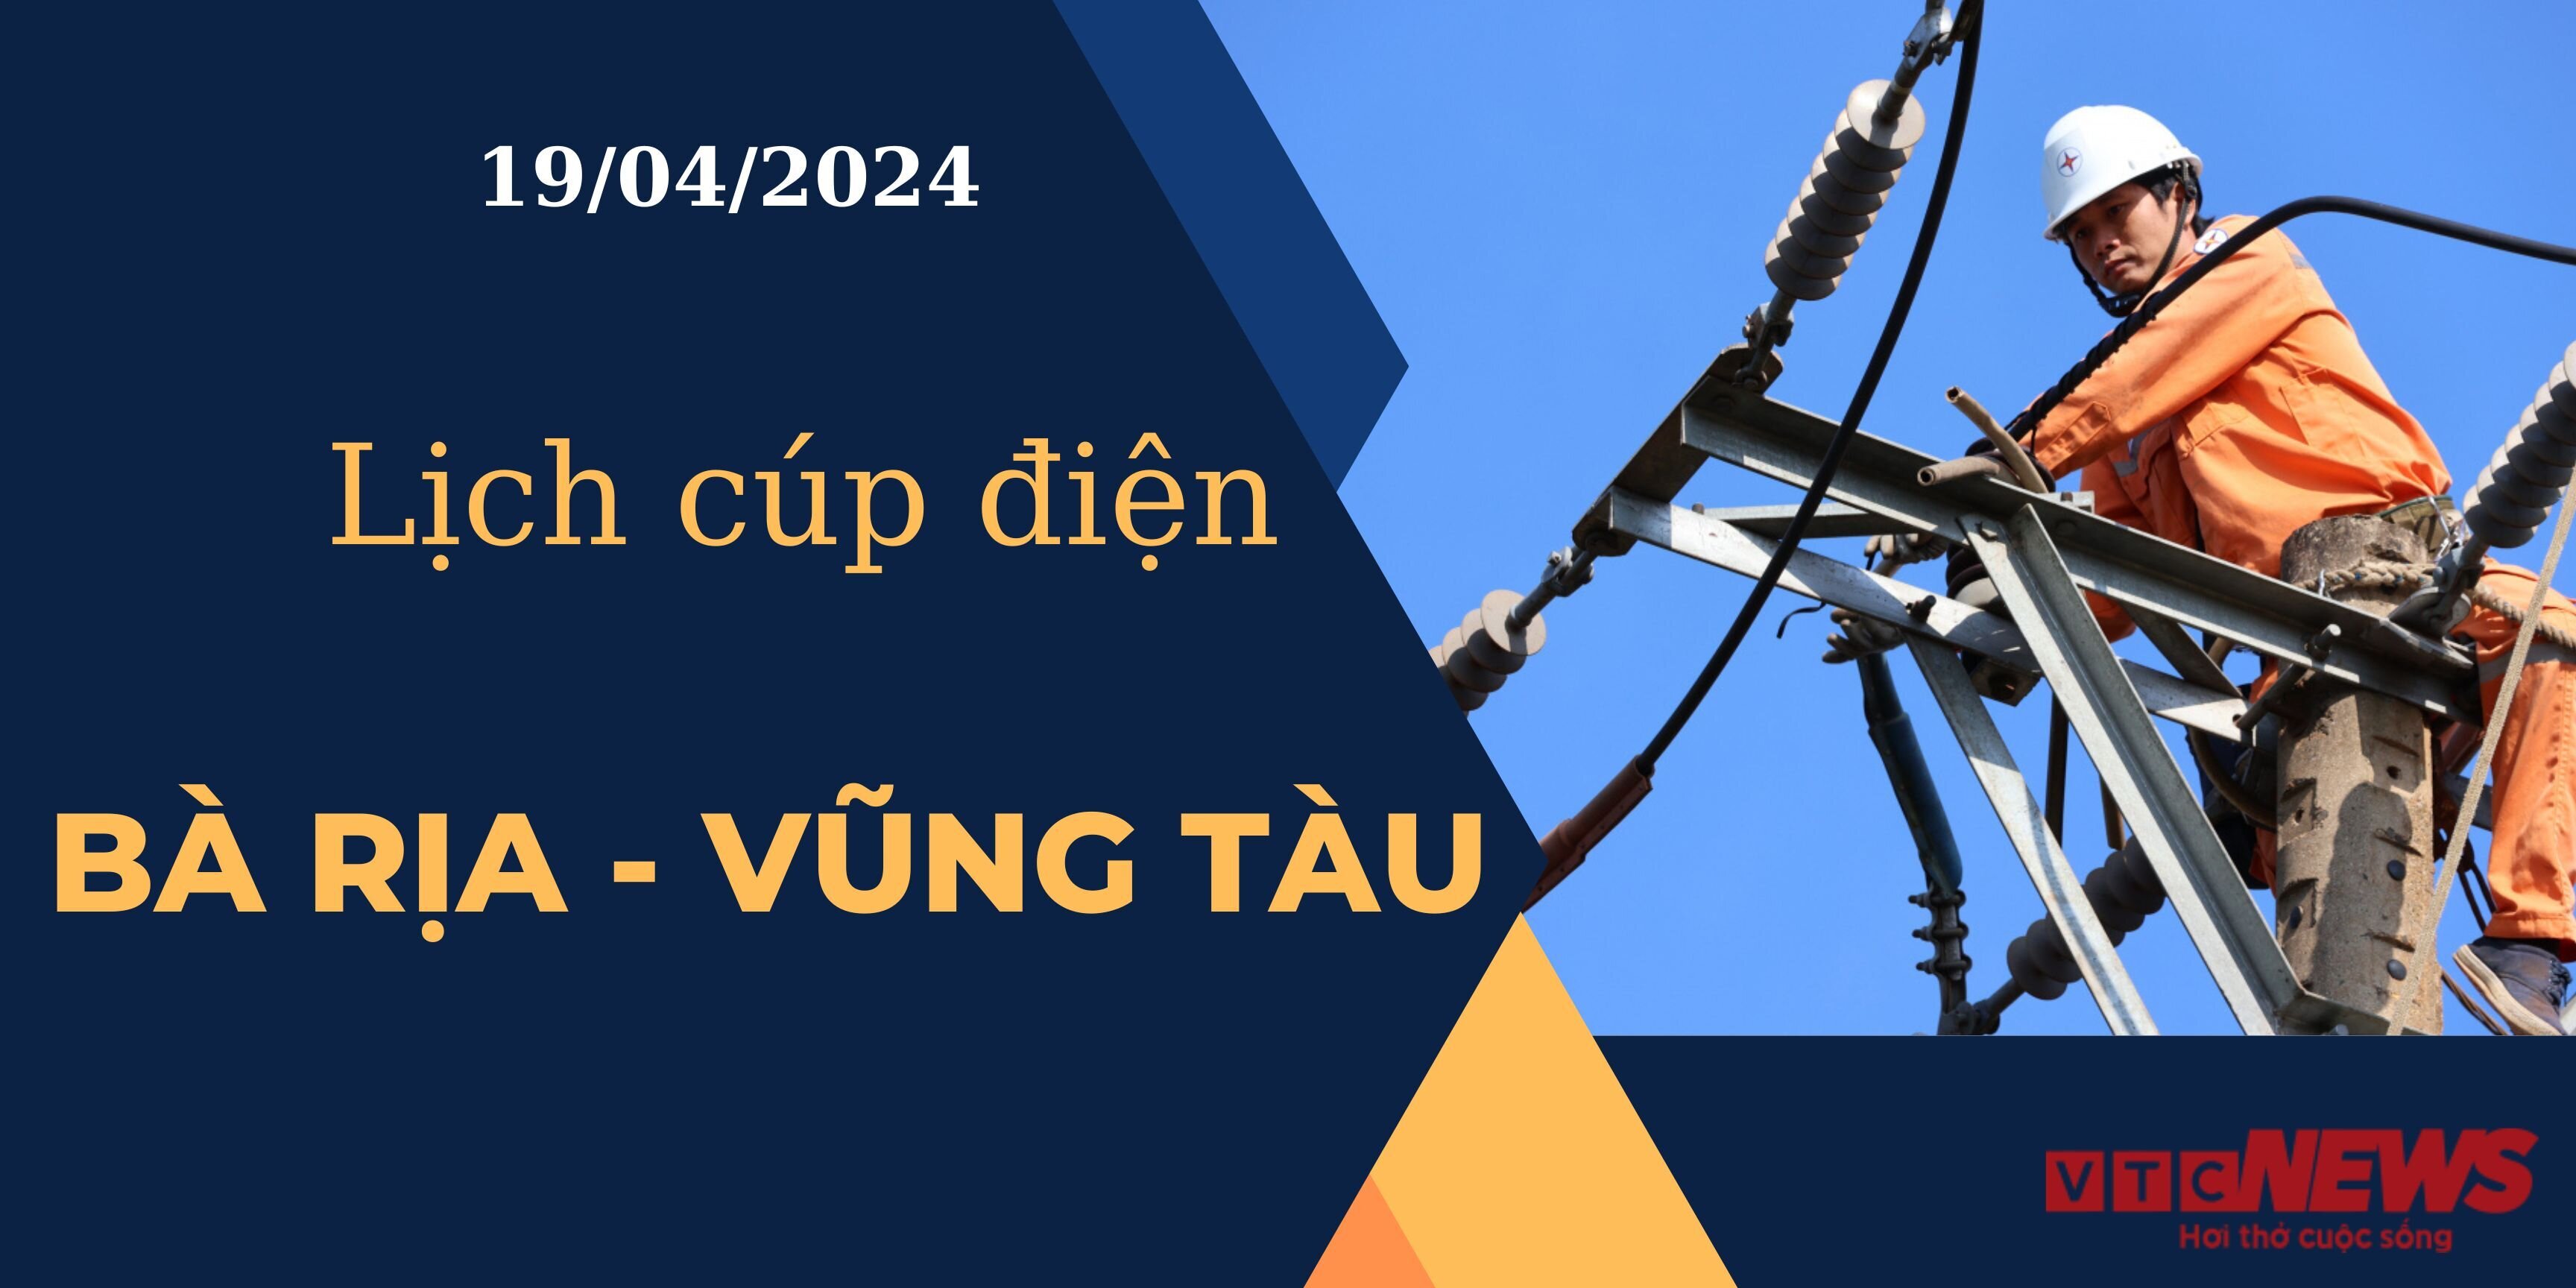 Lịch cúp điện hôm nay ngày 19/04/2024 tại Bà Rịa - Vũng Tàu